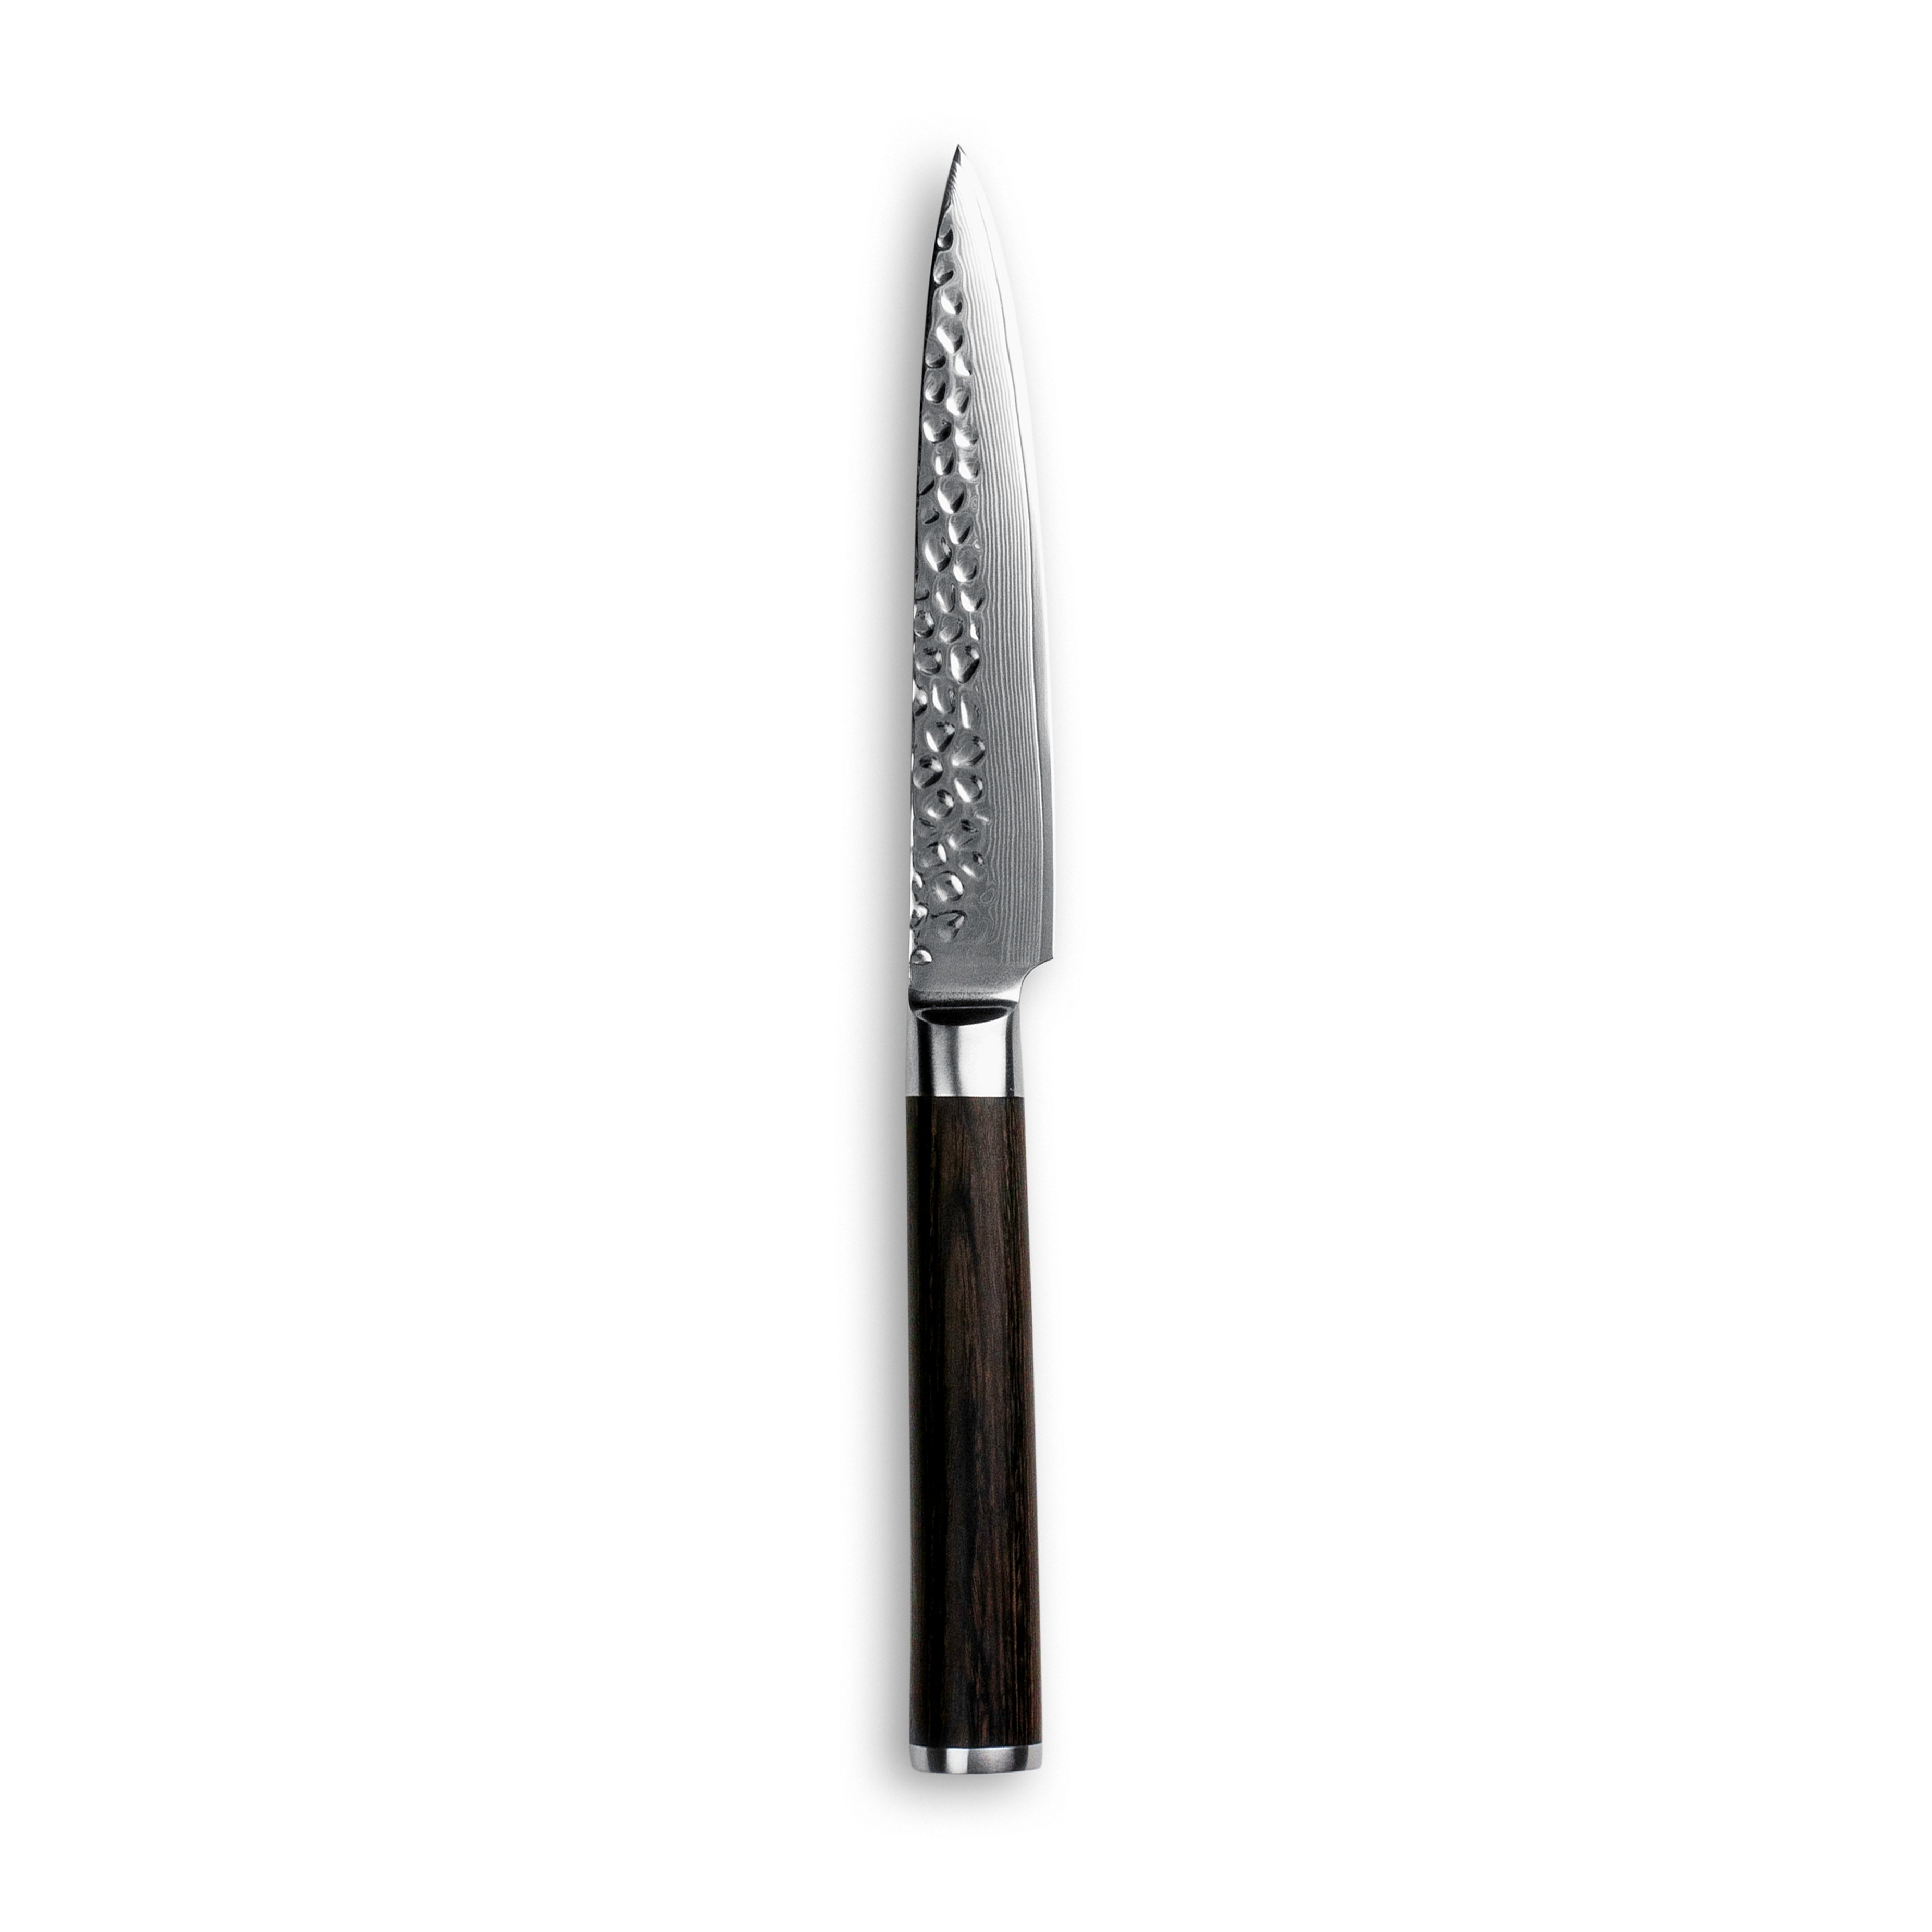 10: Utility kniv - Original